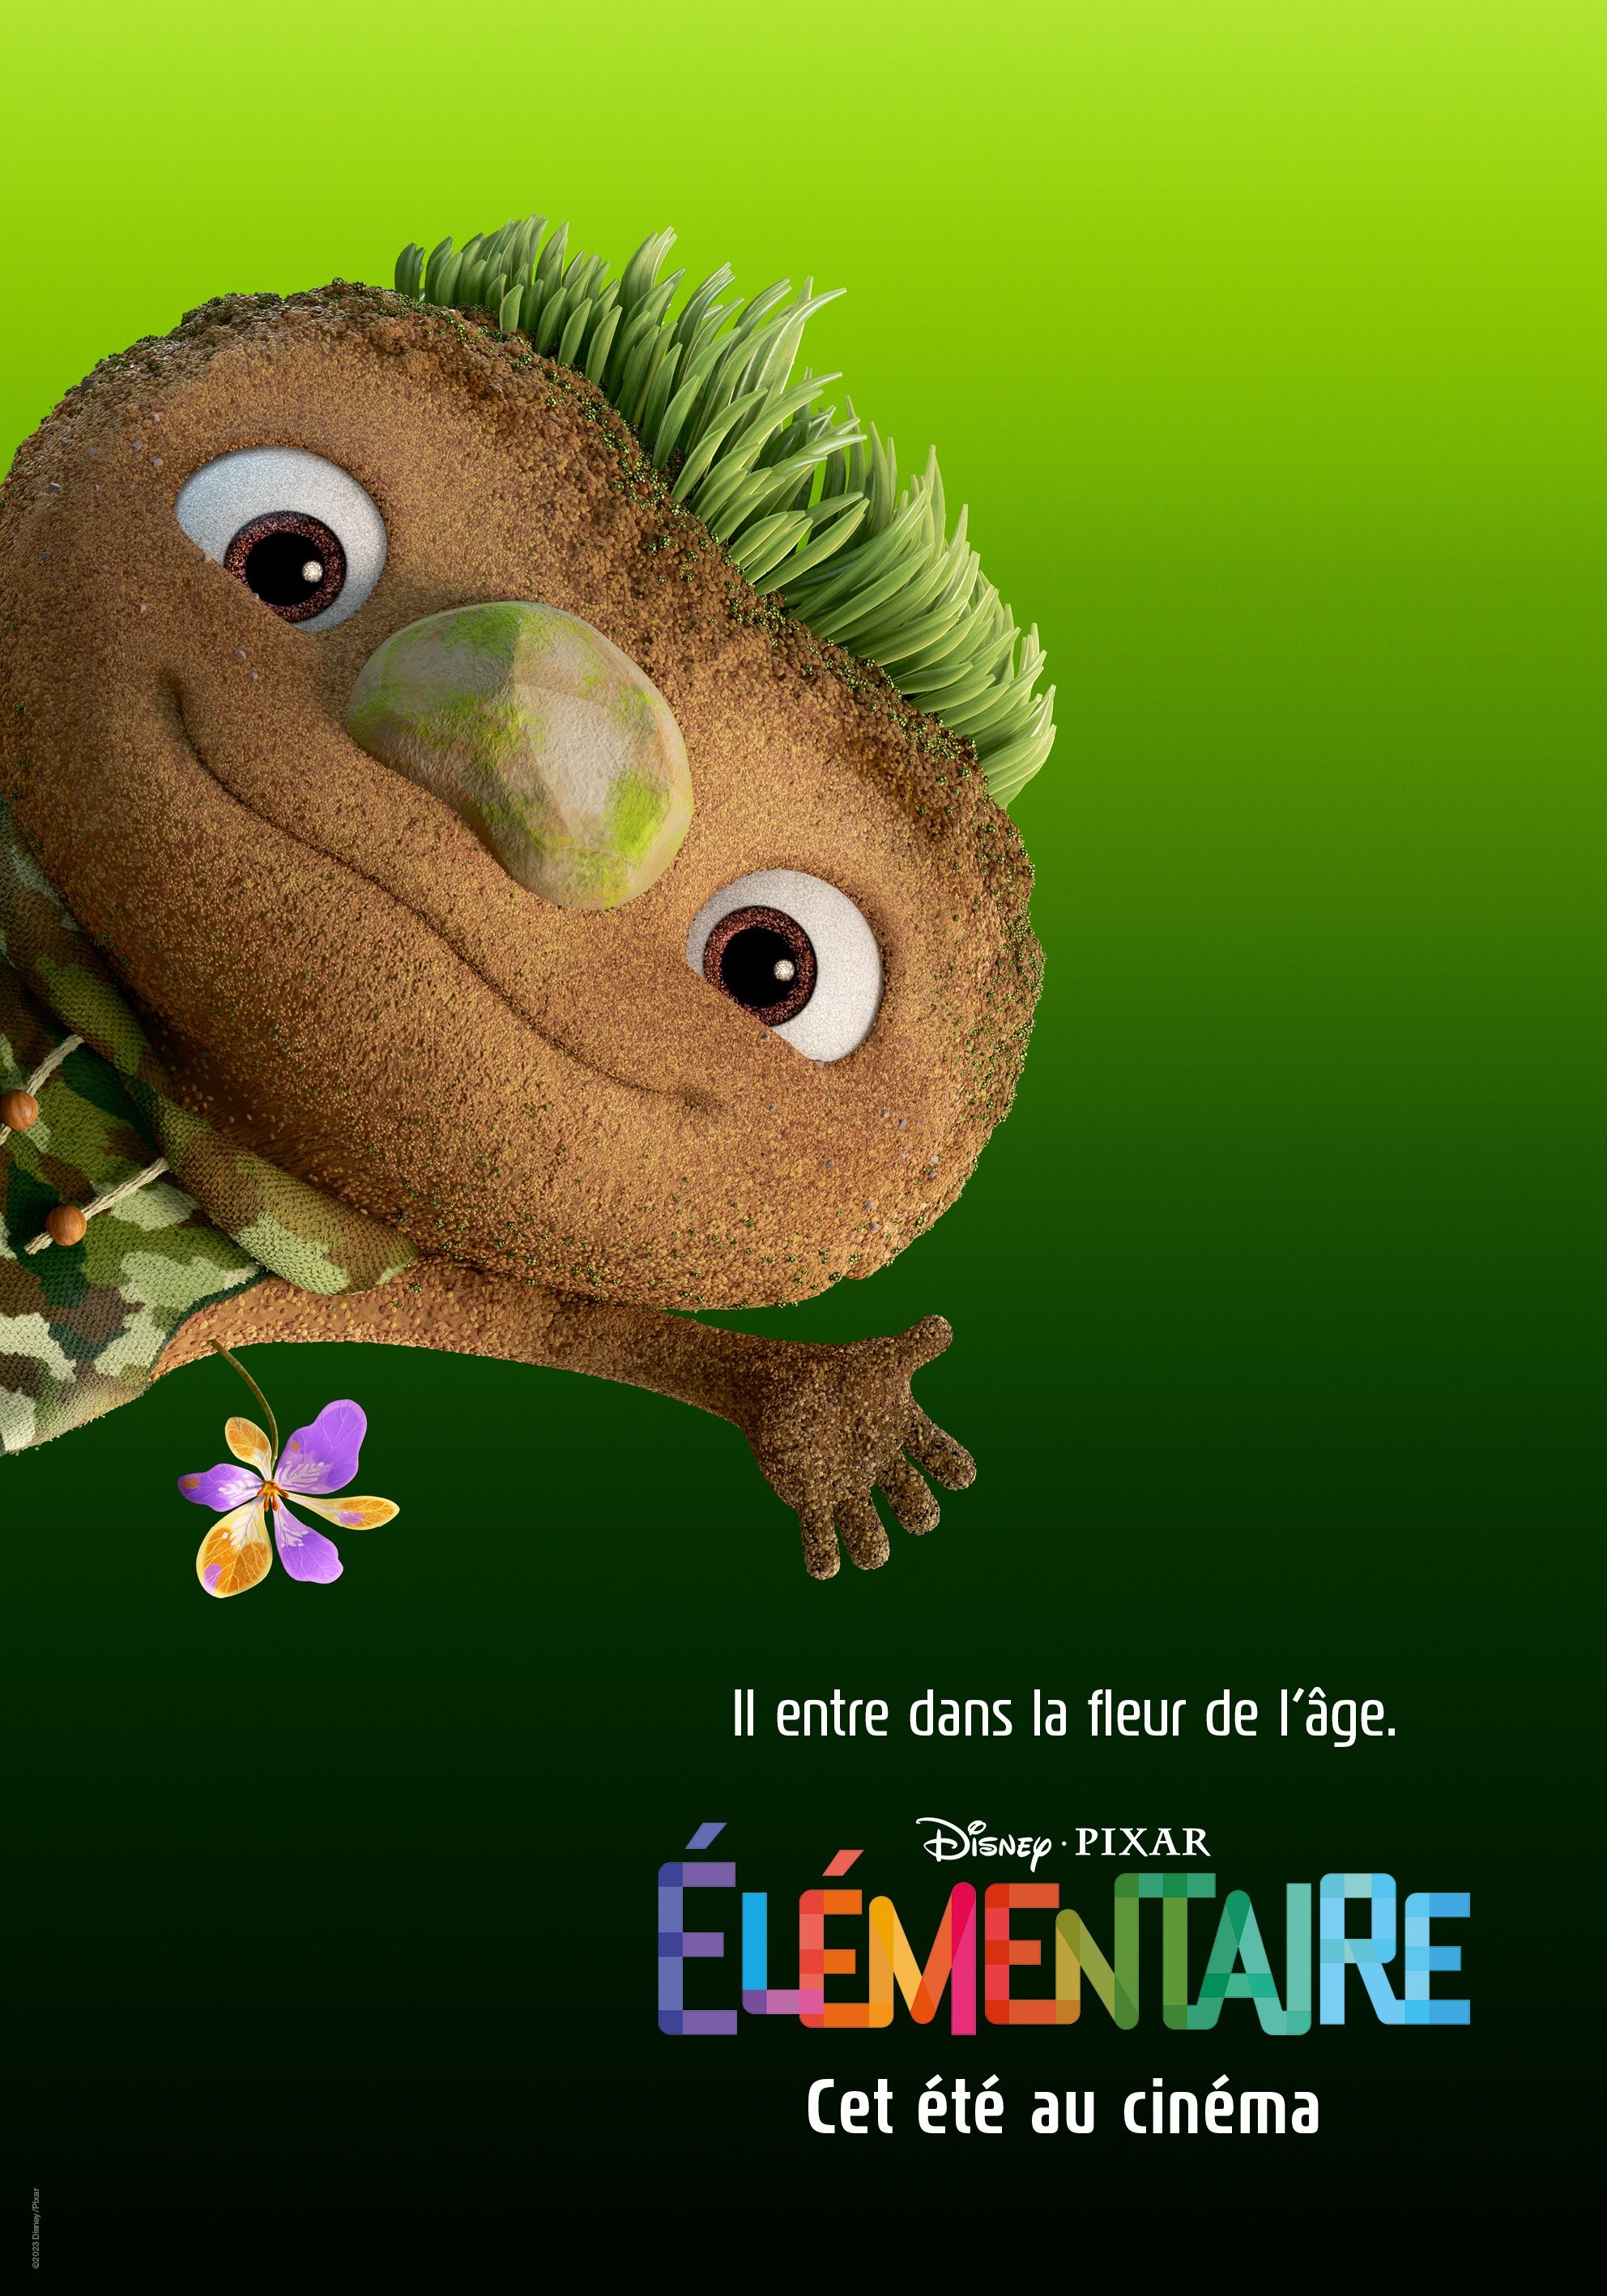 Élémentaire - Critique du Film d'Animation Pixar